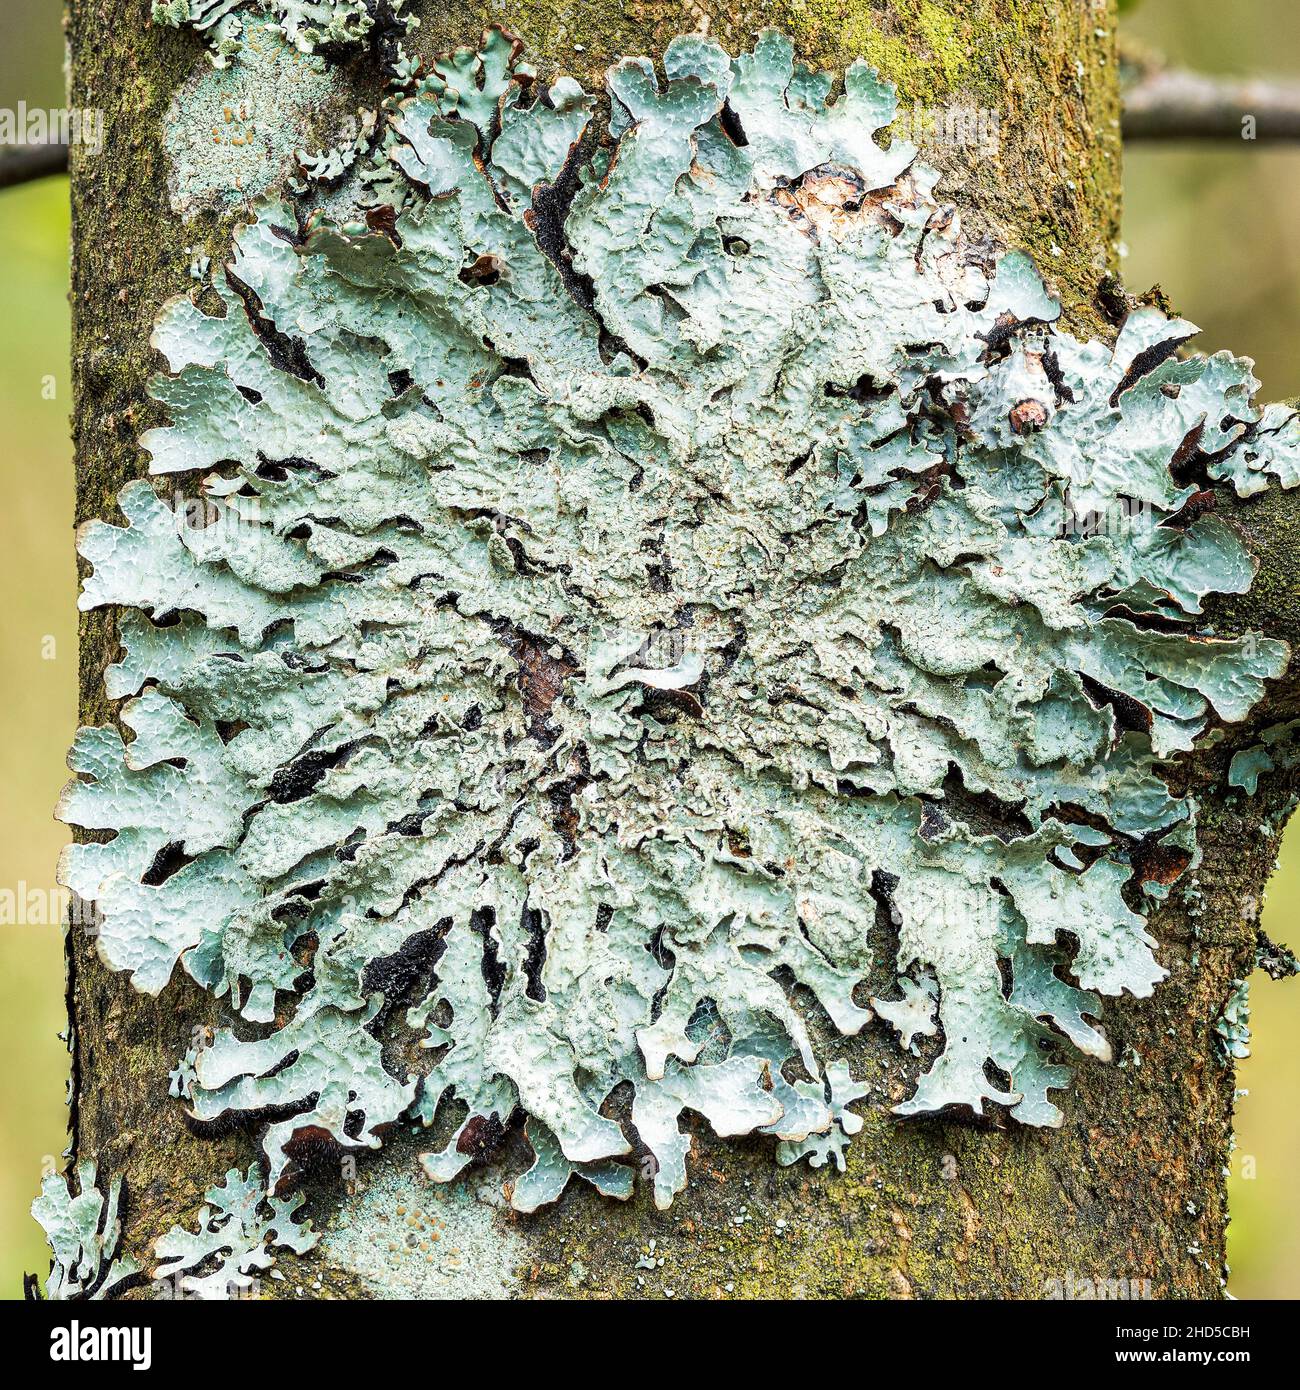 Lichen Parmelia sulcata on tree bark, high definition macro Stock Photo